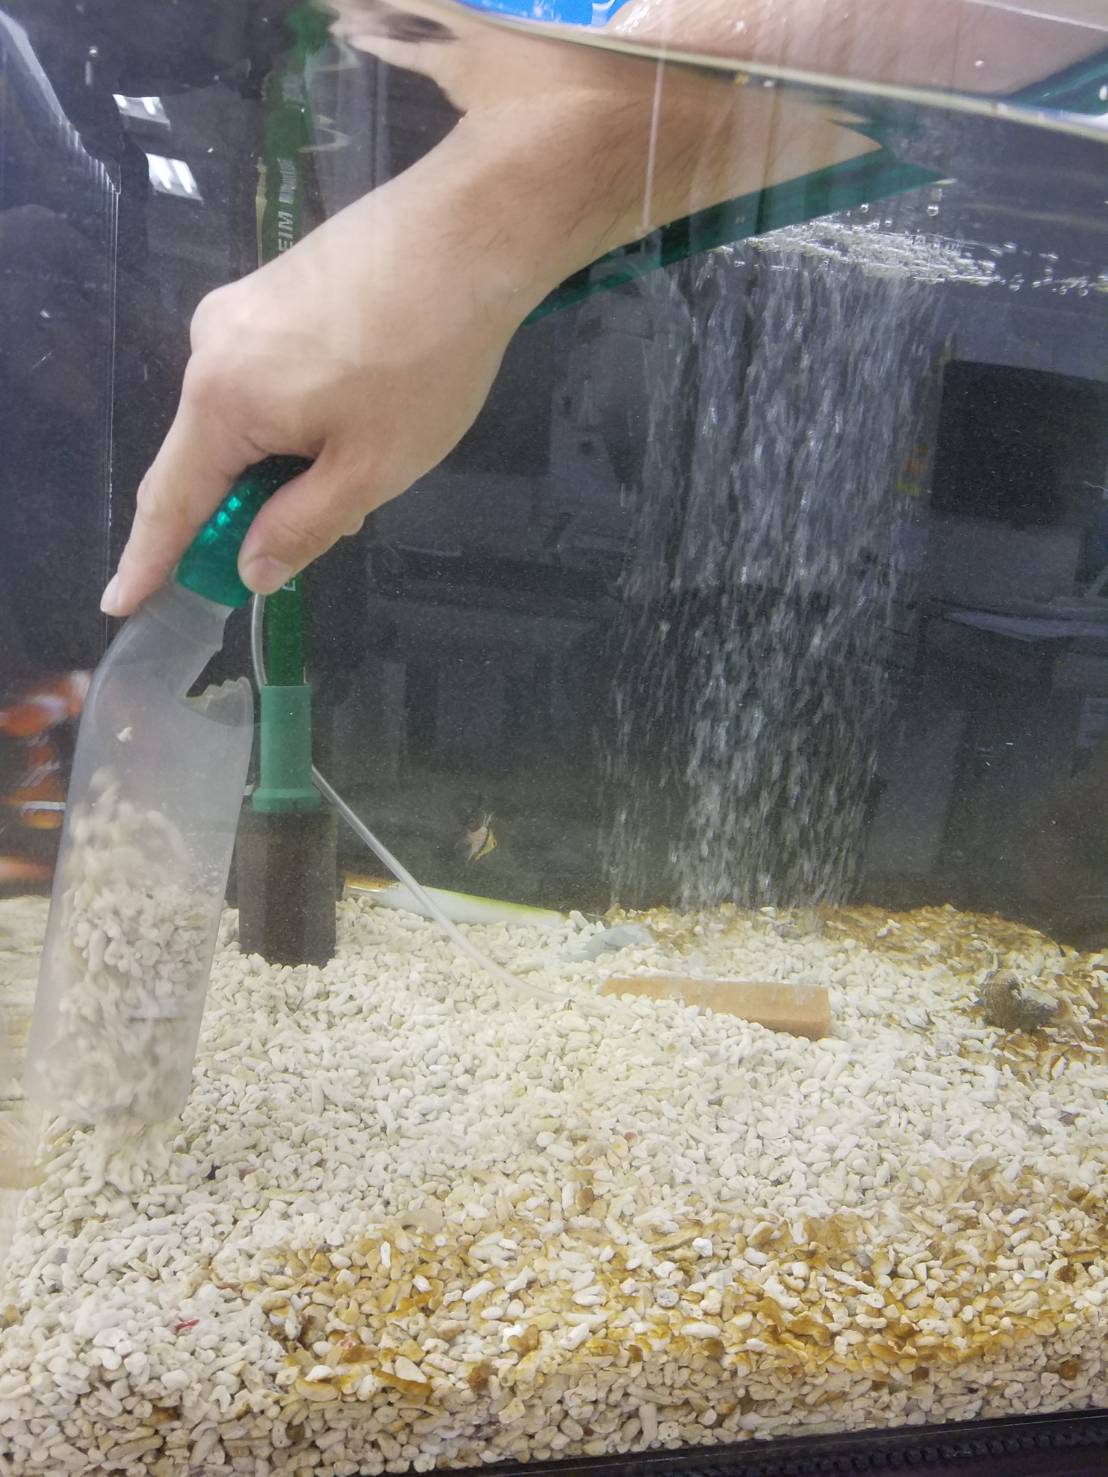 金魚屋の熱帯魚水槽メンテナンス 掃除テクニック教えちゃいます 金魚屋 水槽レンタル 水槽メンテナンス 掃除お任せください さいたま 埼玉